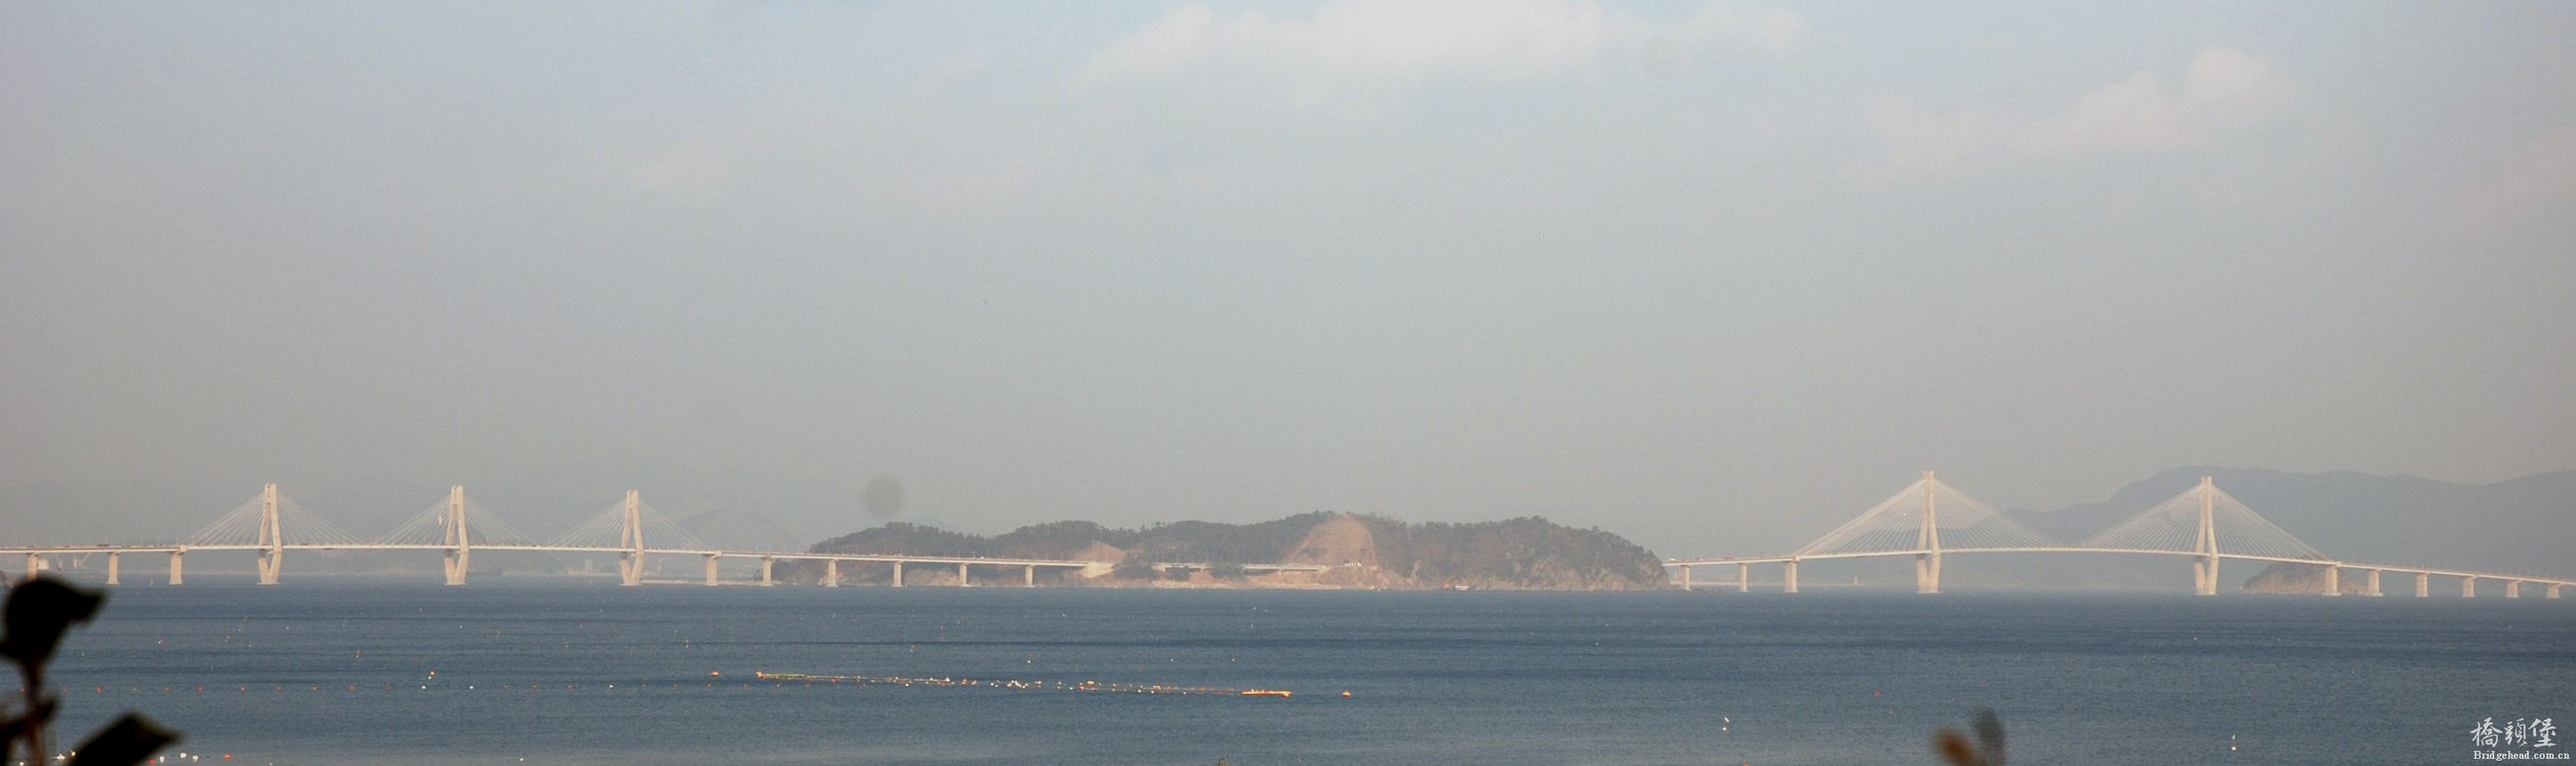 Goega_Bridge_Panorama.jpg